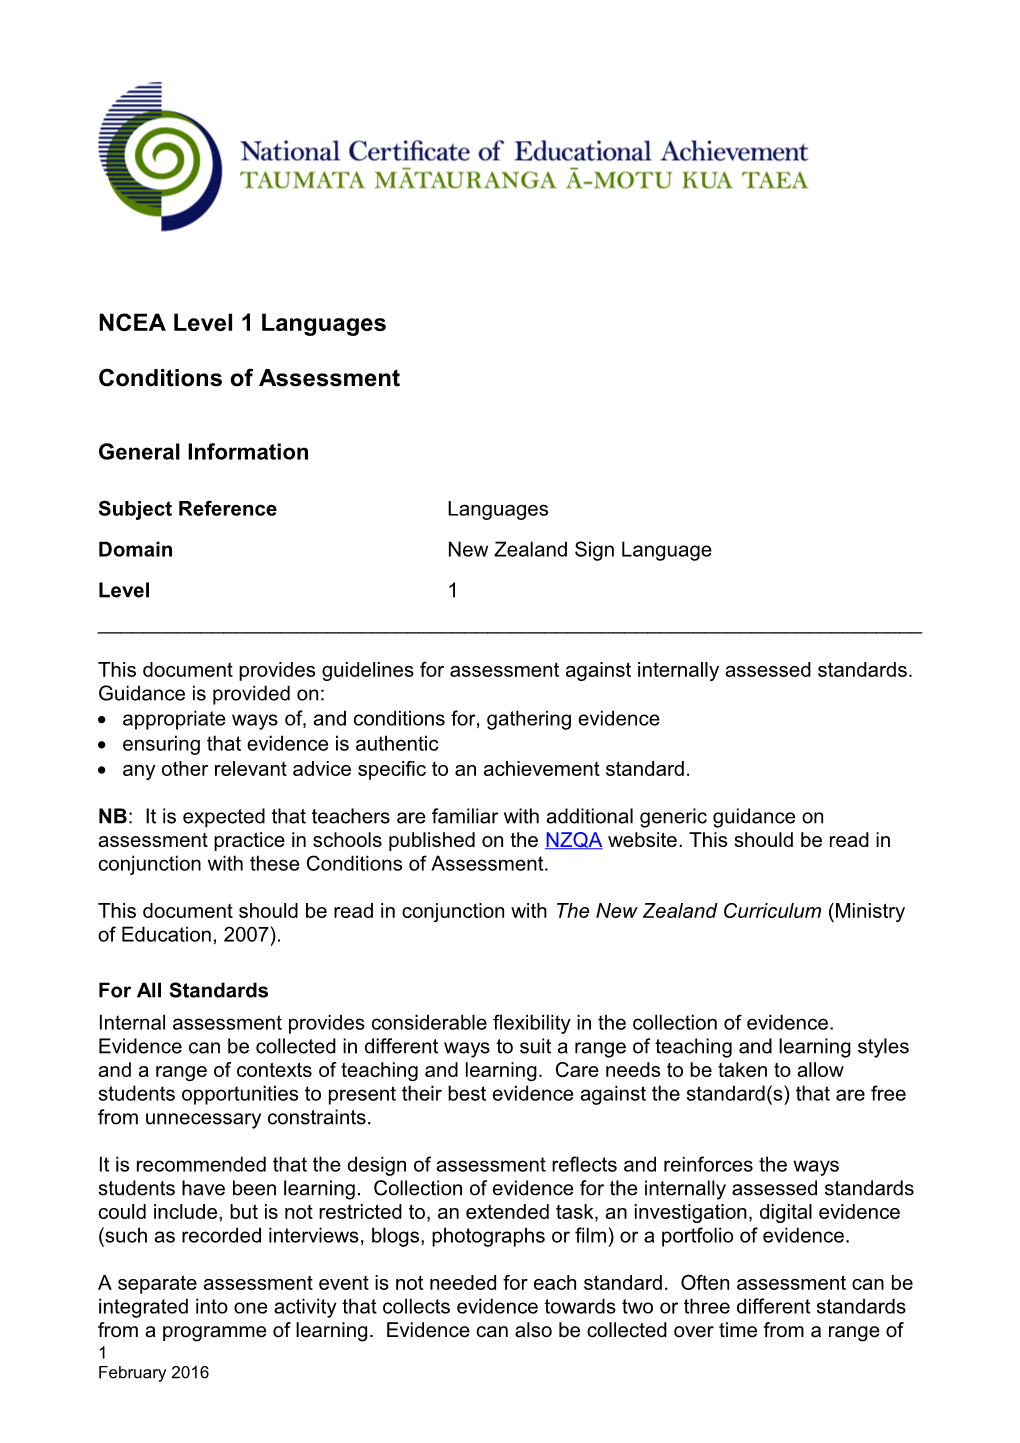 Languages NZSL L1 Standards